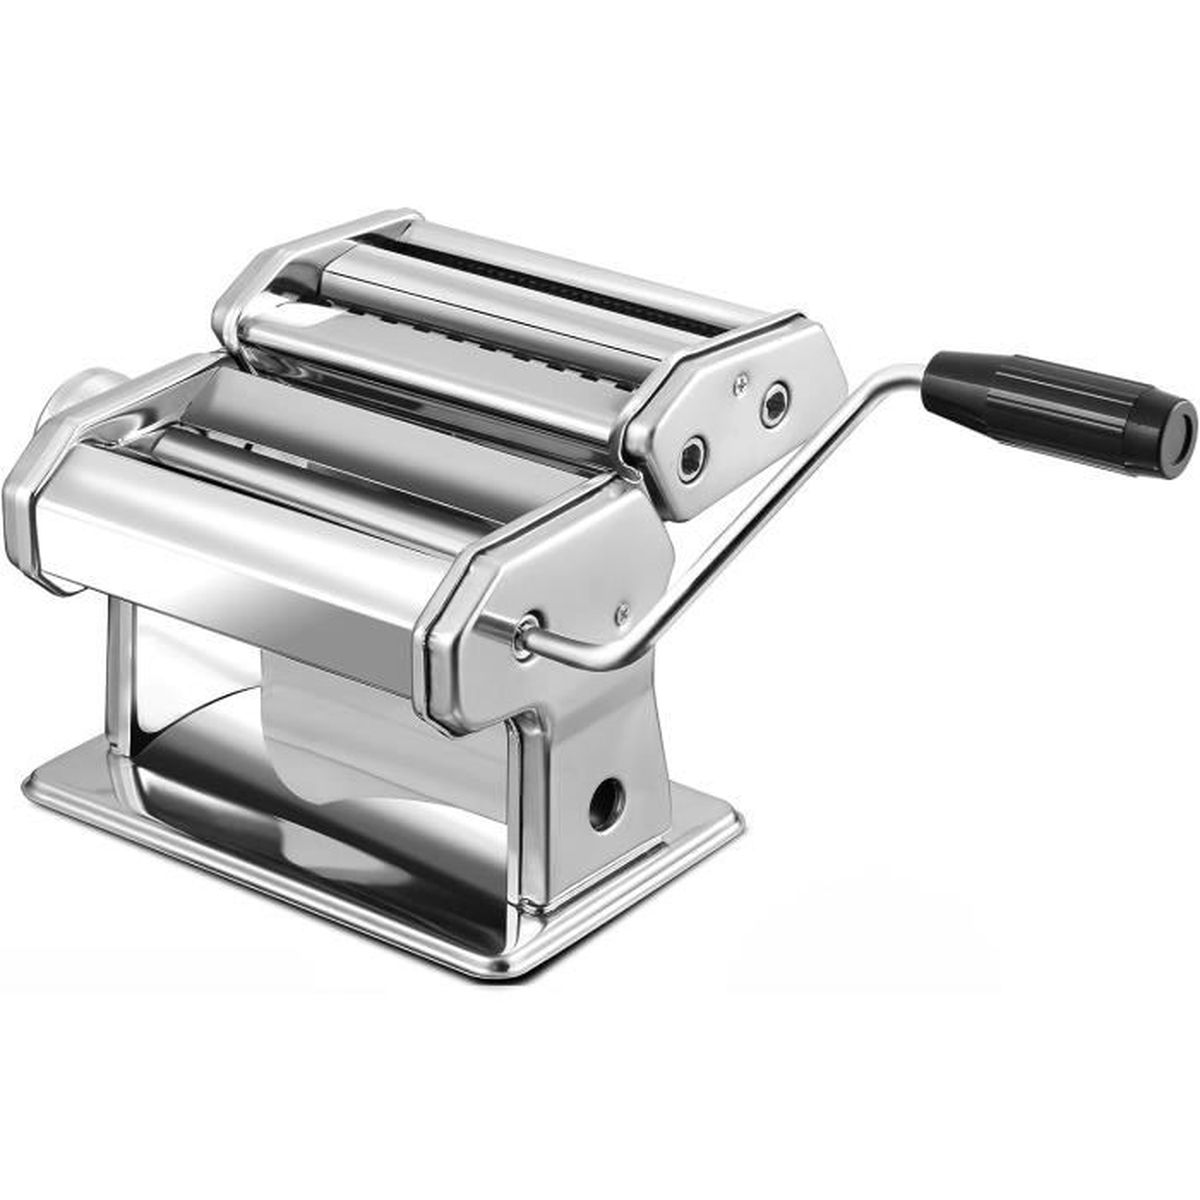 Banc d'essai : La machine à pâtes Philips #cool » Cinq Fourchettes